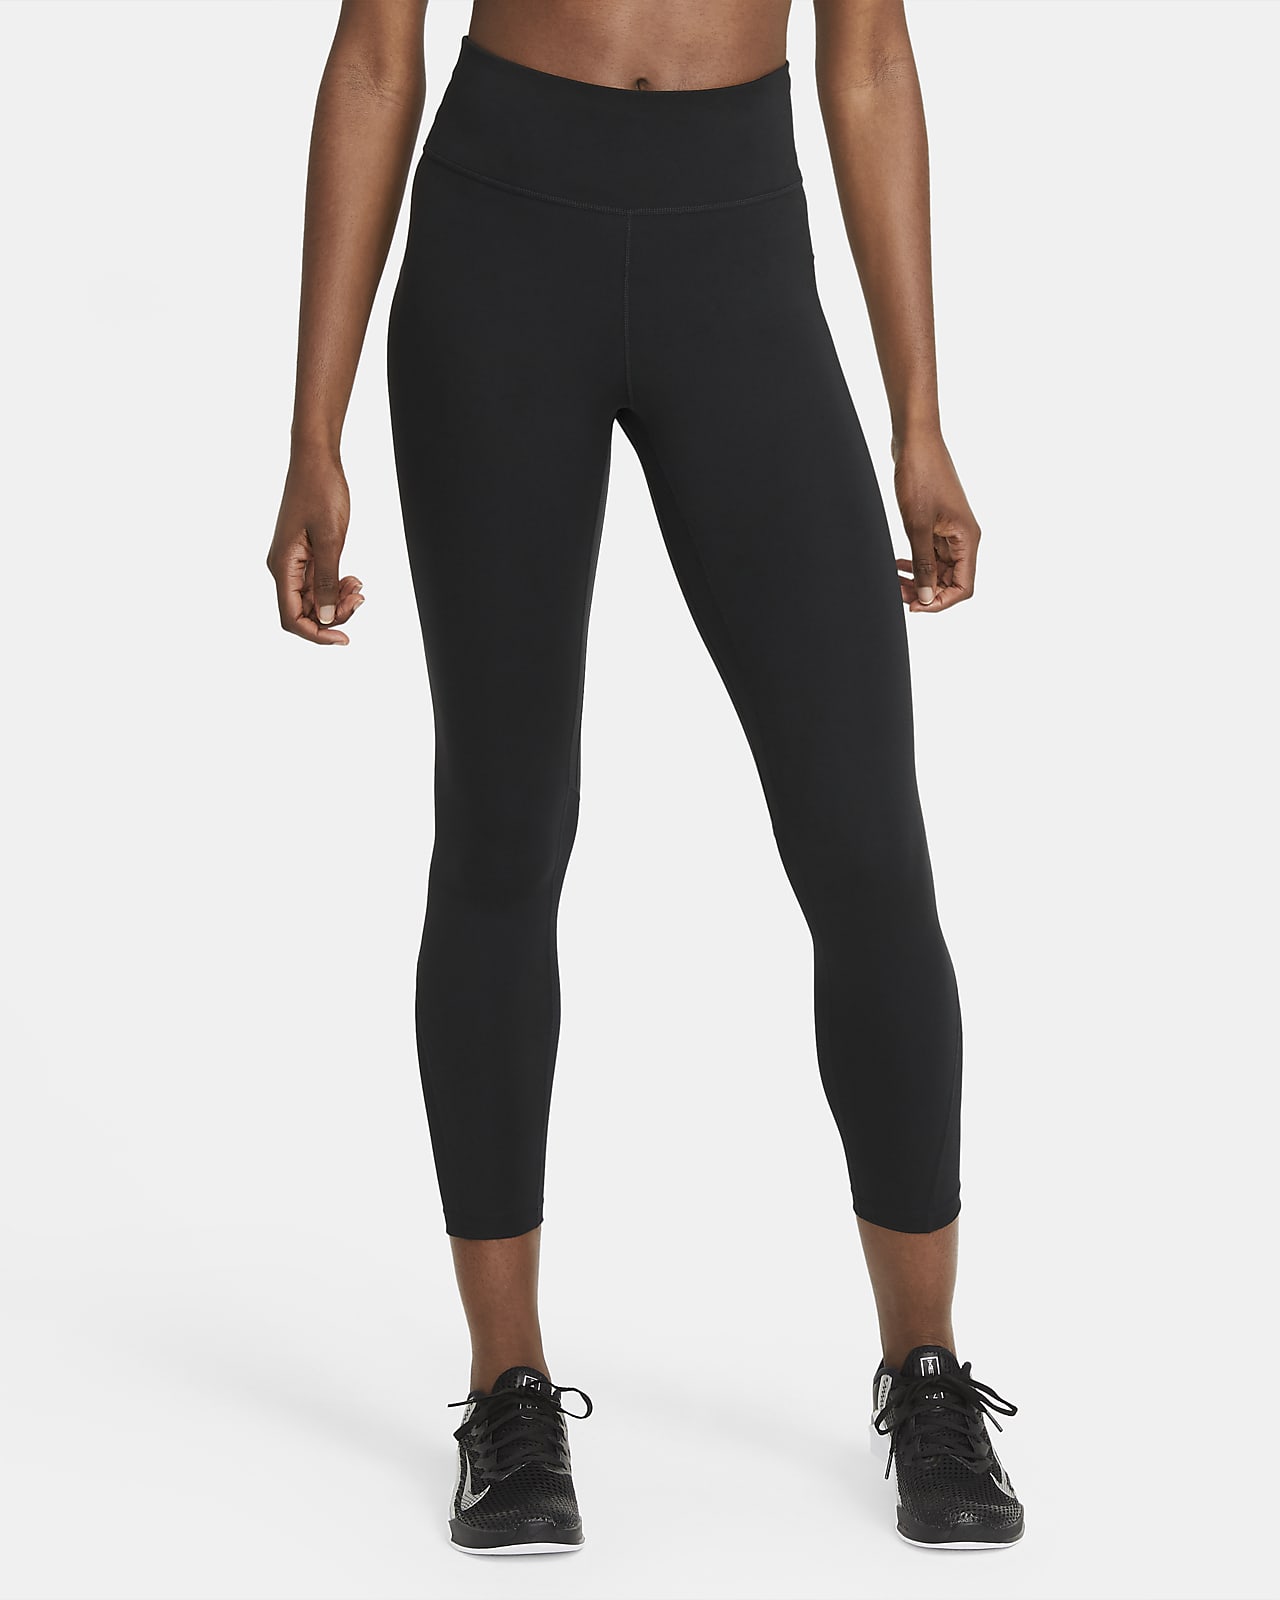 Legging 7/8 taille mi-haute à empiècements en mesh Nike One pour Femme